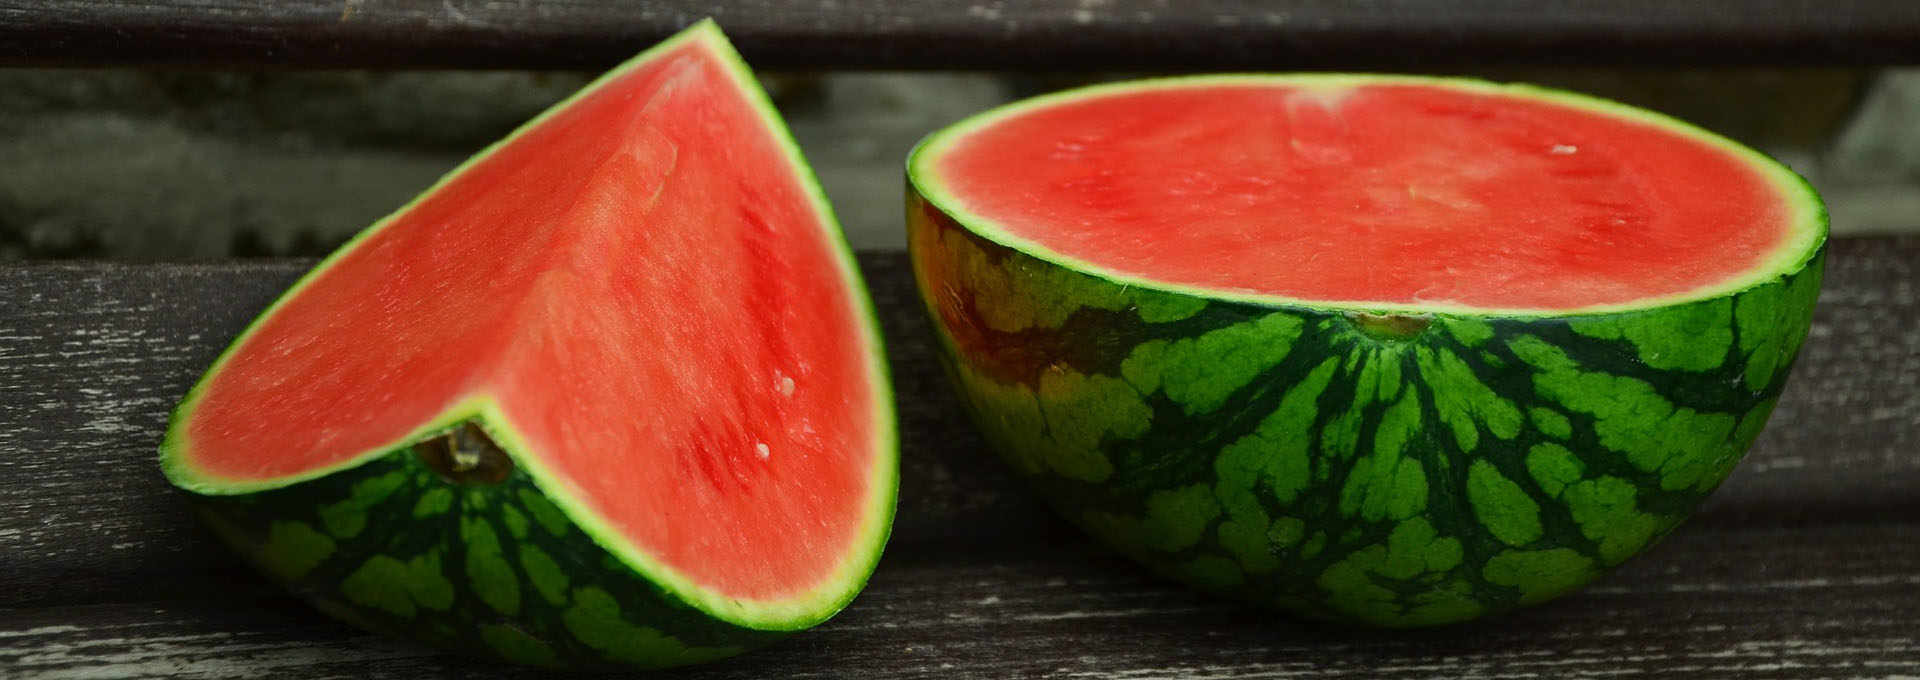 Watermelon: A Summer Fruit